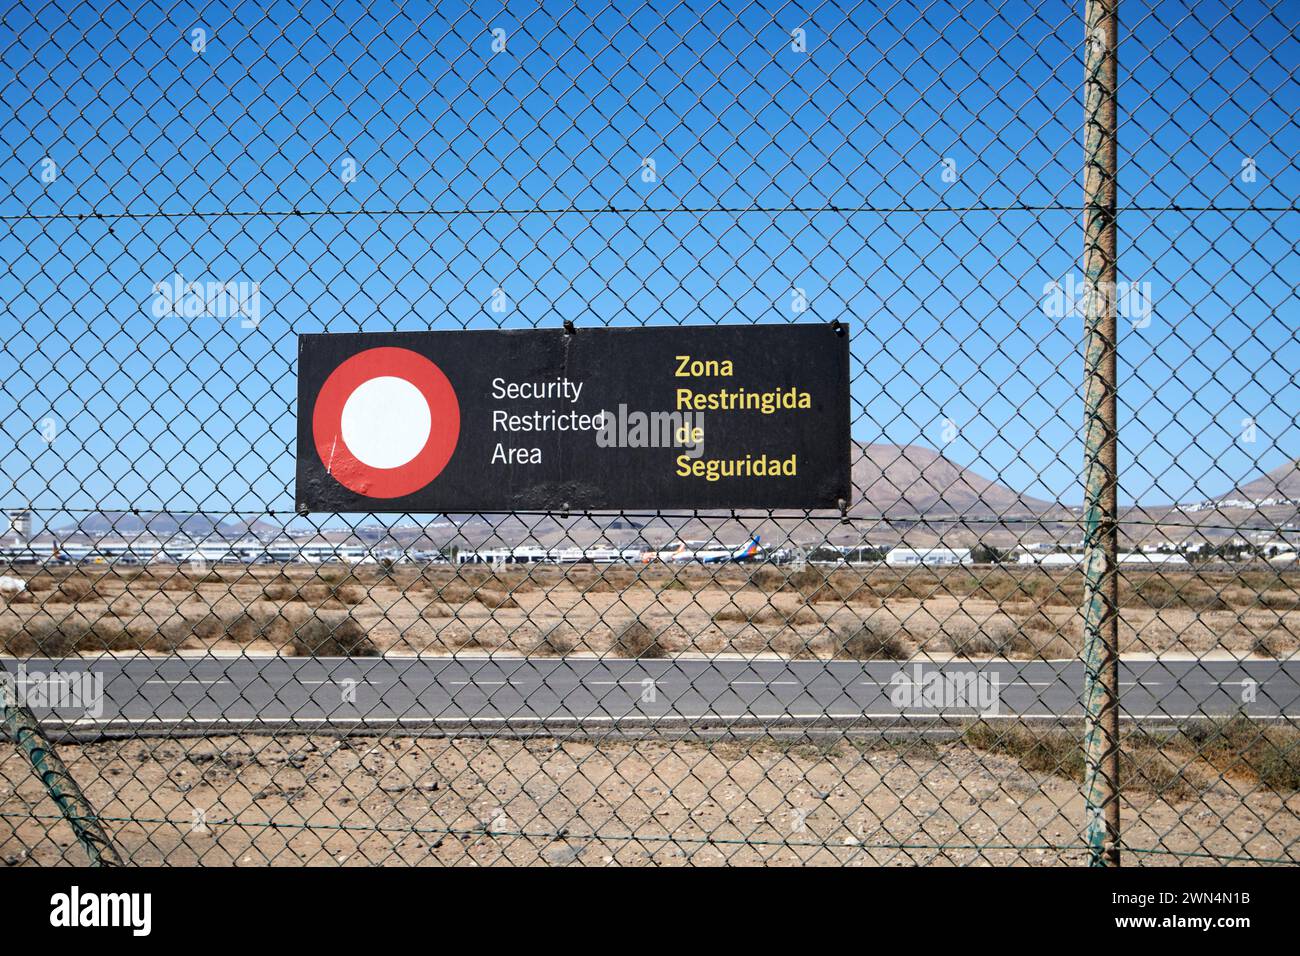 Panneaux d'avertissement de zone réglementée de sécurité sur la clôture périphérique de l'aéroport de Lanzarote, îles Canaries, espagne Banque D'Images